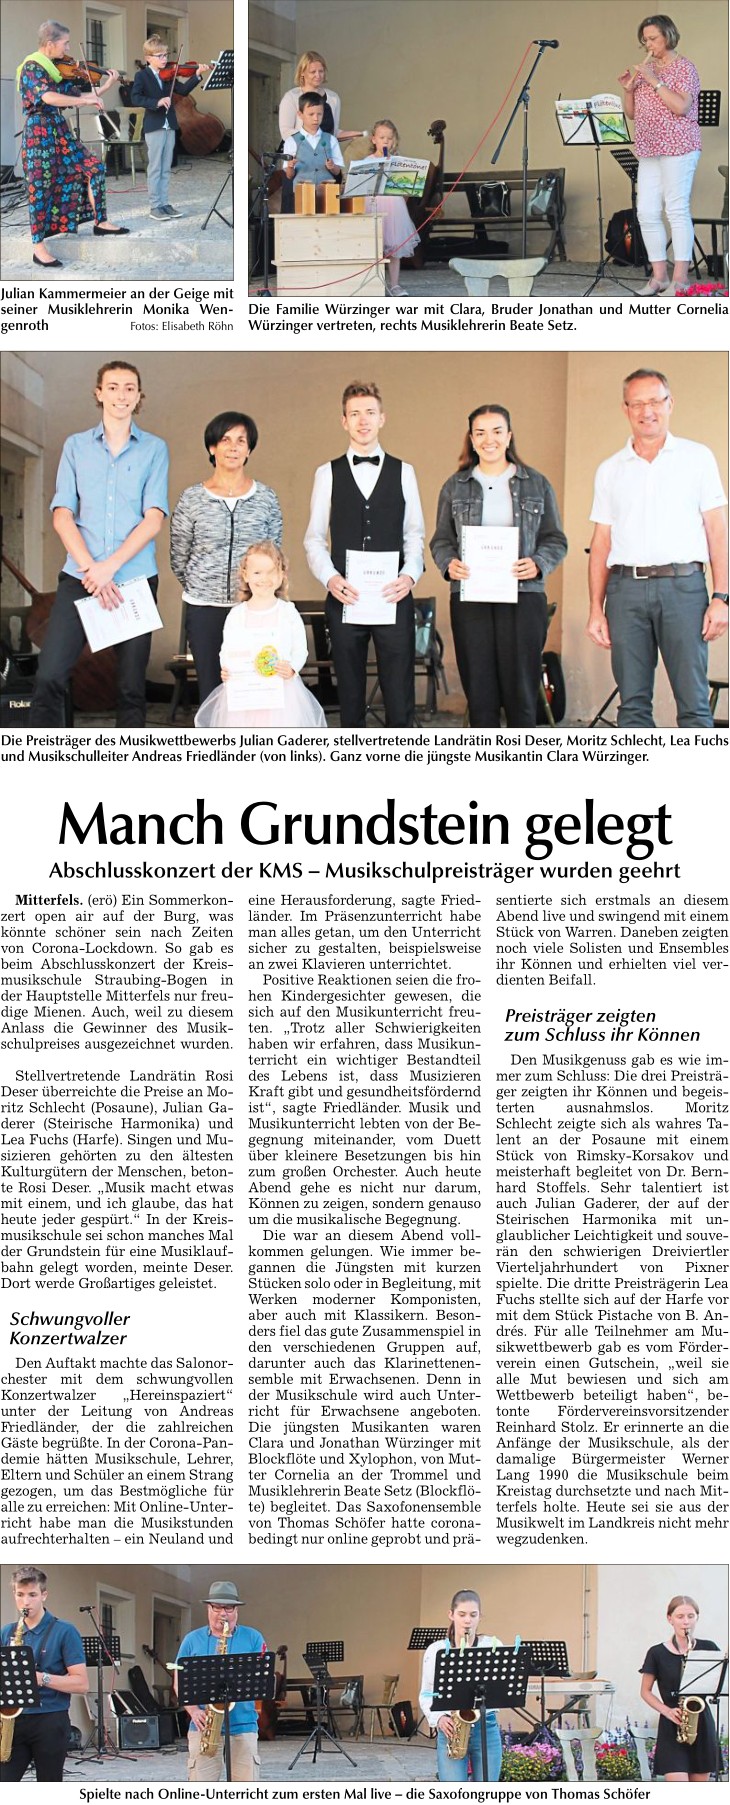 Bild zu "Manch Grundstein gelegt", Bogener Zeitung 23.7.2021